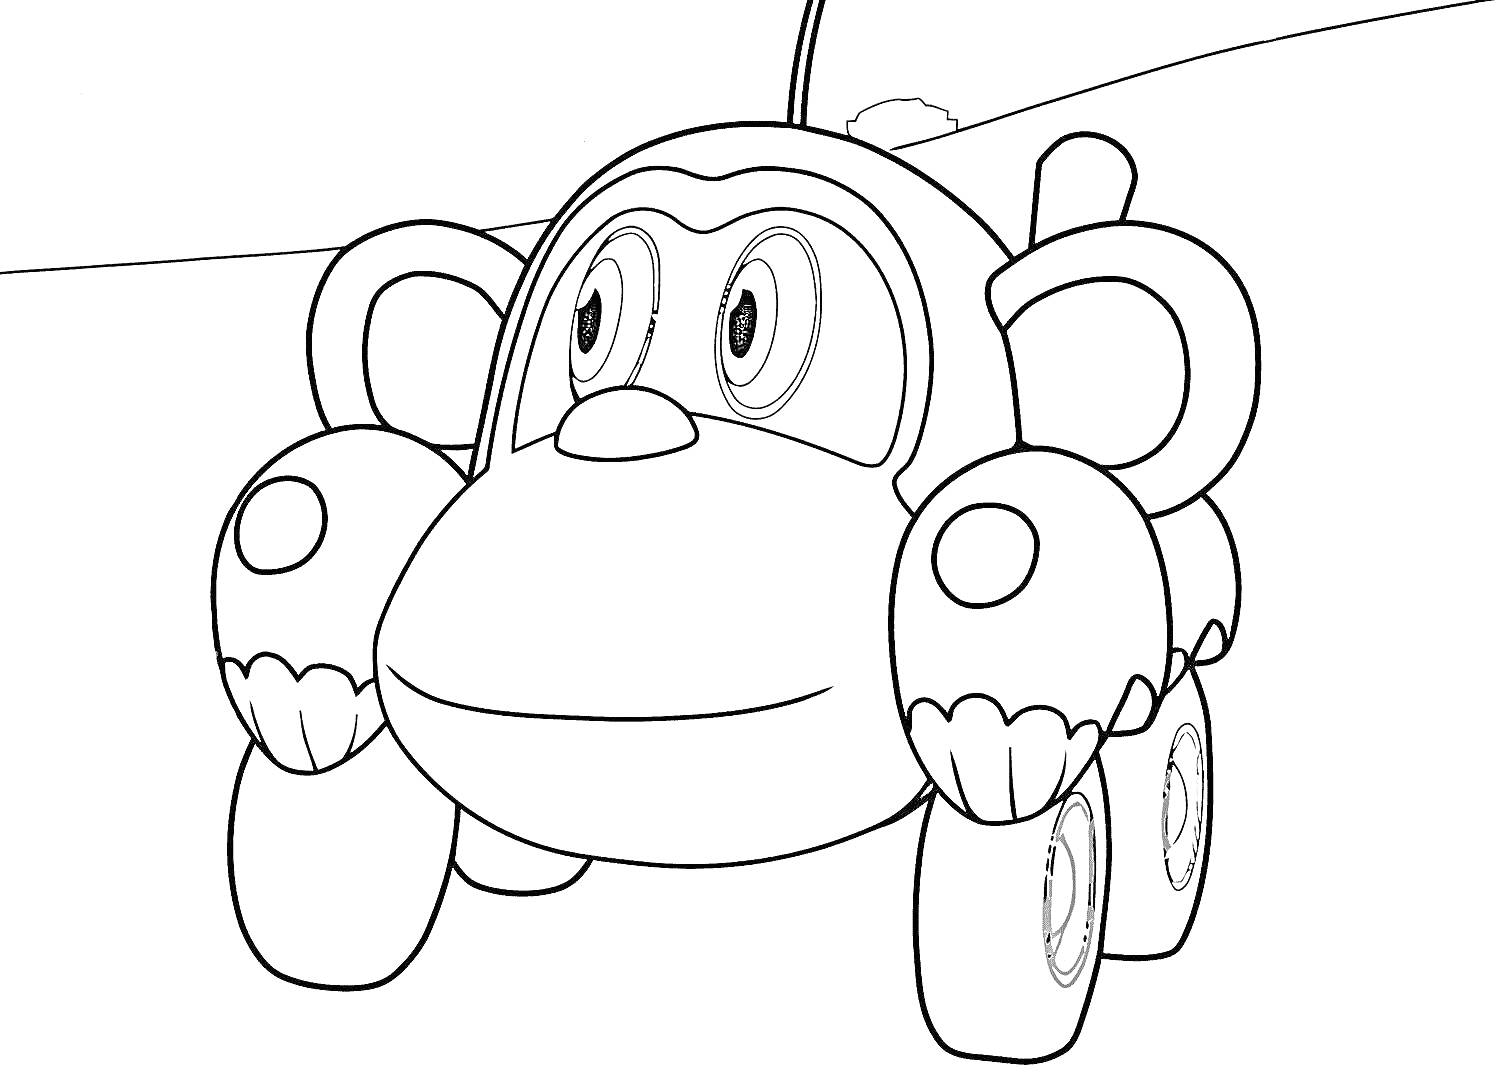 Раскраска Машинка-обезьяна из мультфильма 